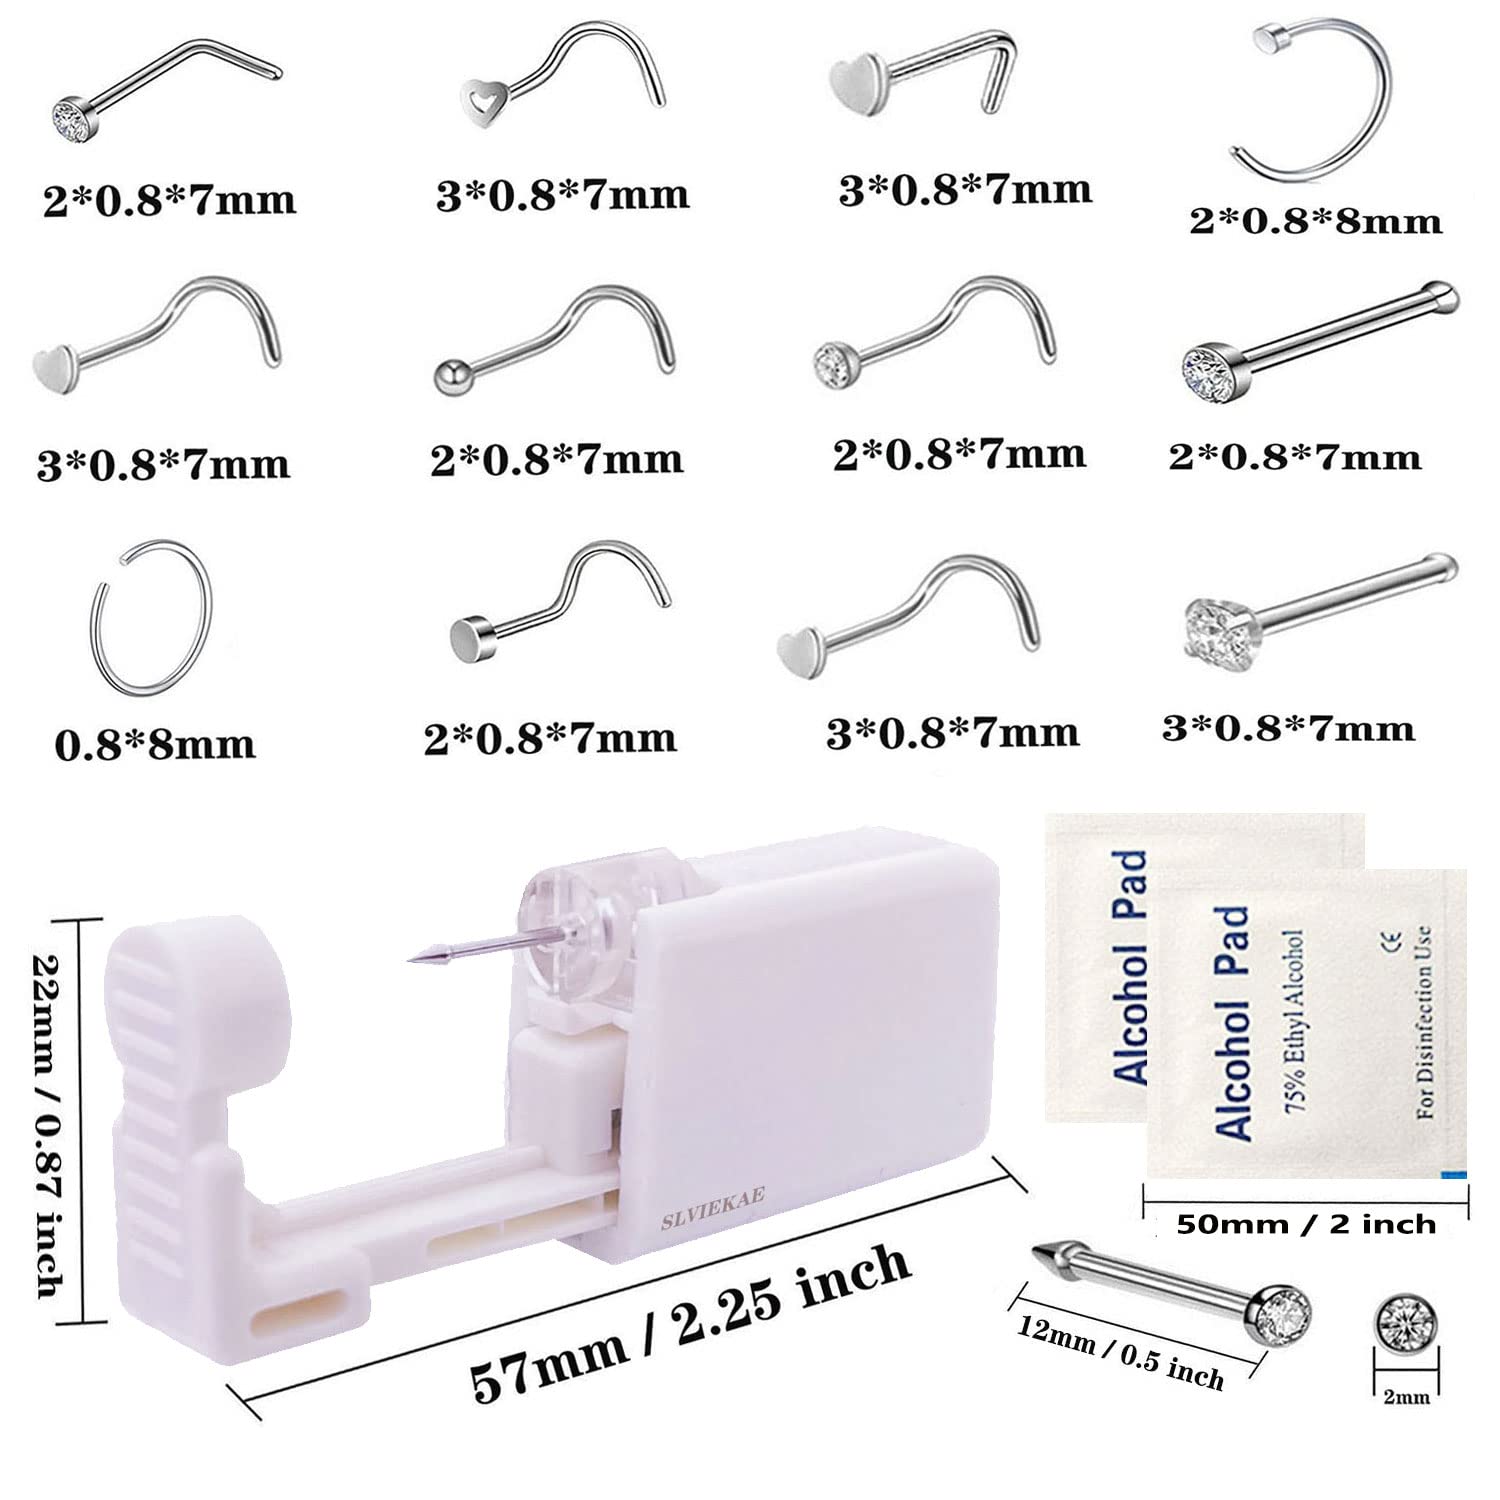 SLVIEKAE Self Nose Piercing Kit Disposable Sterile Ear Nose Piercing Kit Tool with 20G Nose Rings Safety Portable Nose Piercing Kit